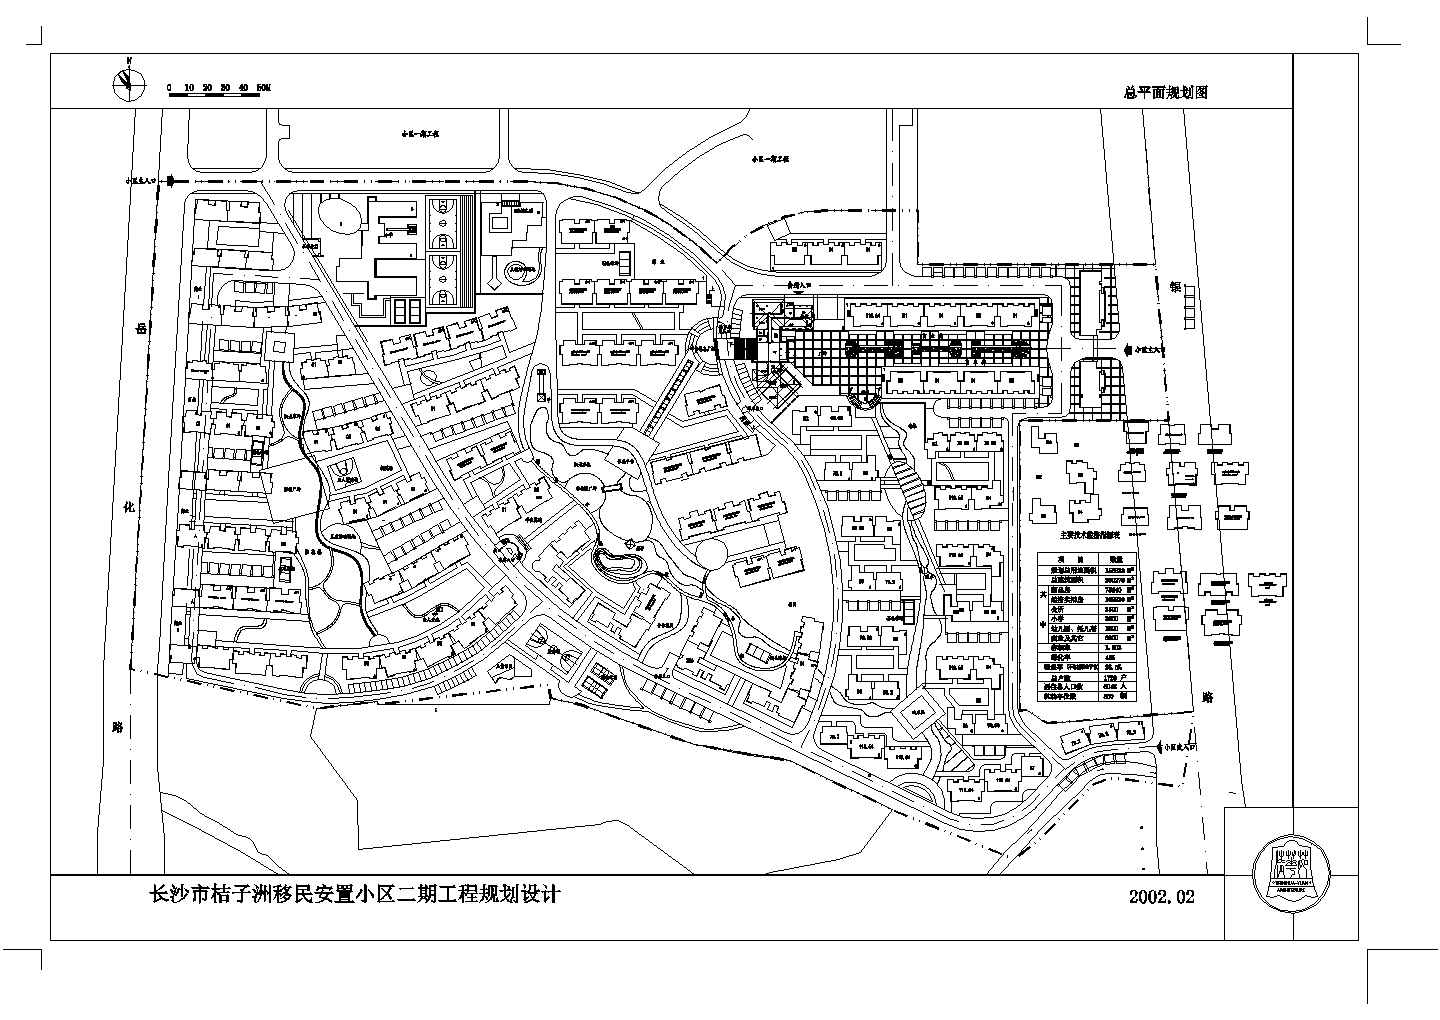 【长沙市】桔子洲移民安置小区二期工程规划总平面规划图，含各户型平面图